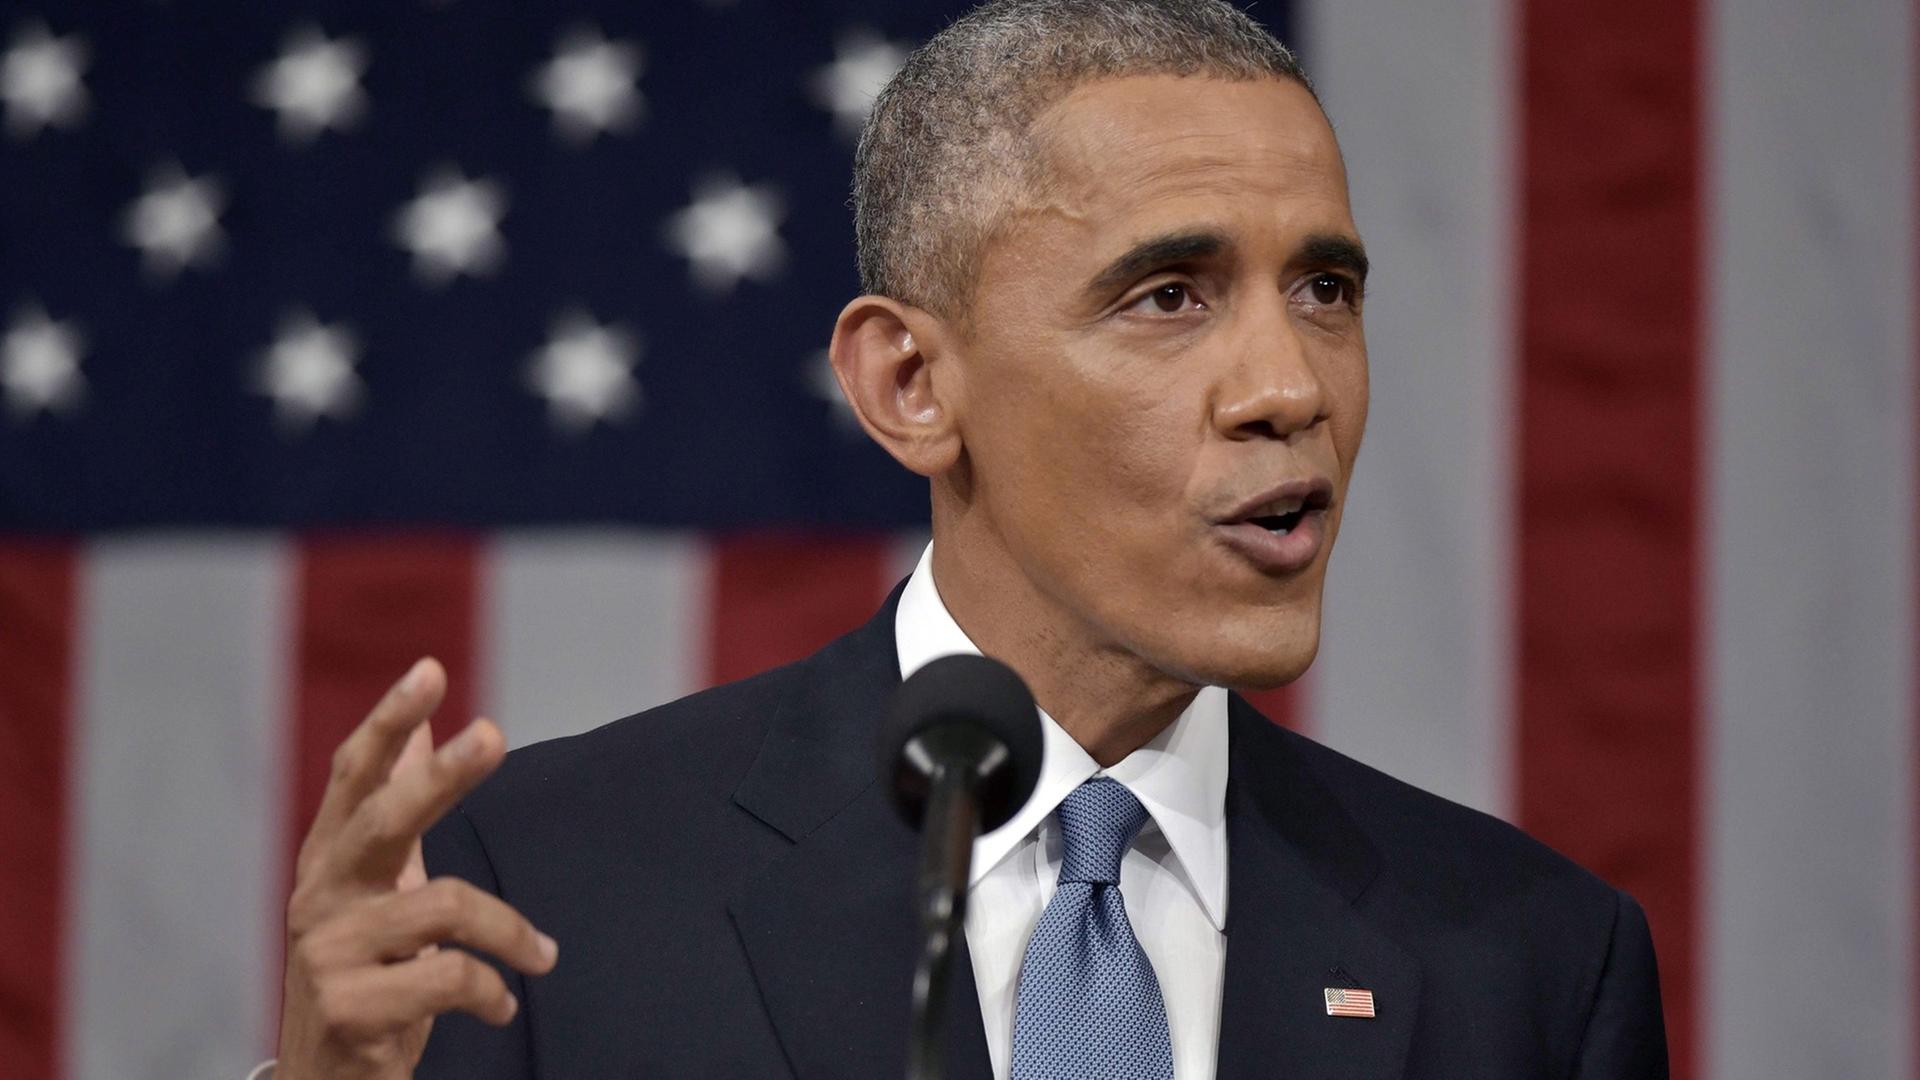 Obama gestikuliert bei seiner Rede, im Hintergrund die US-Flagge.